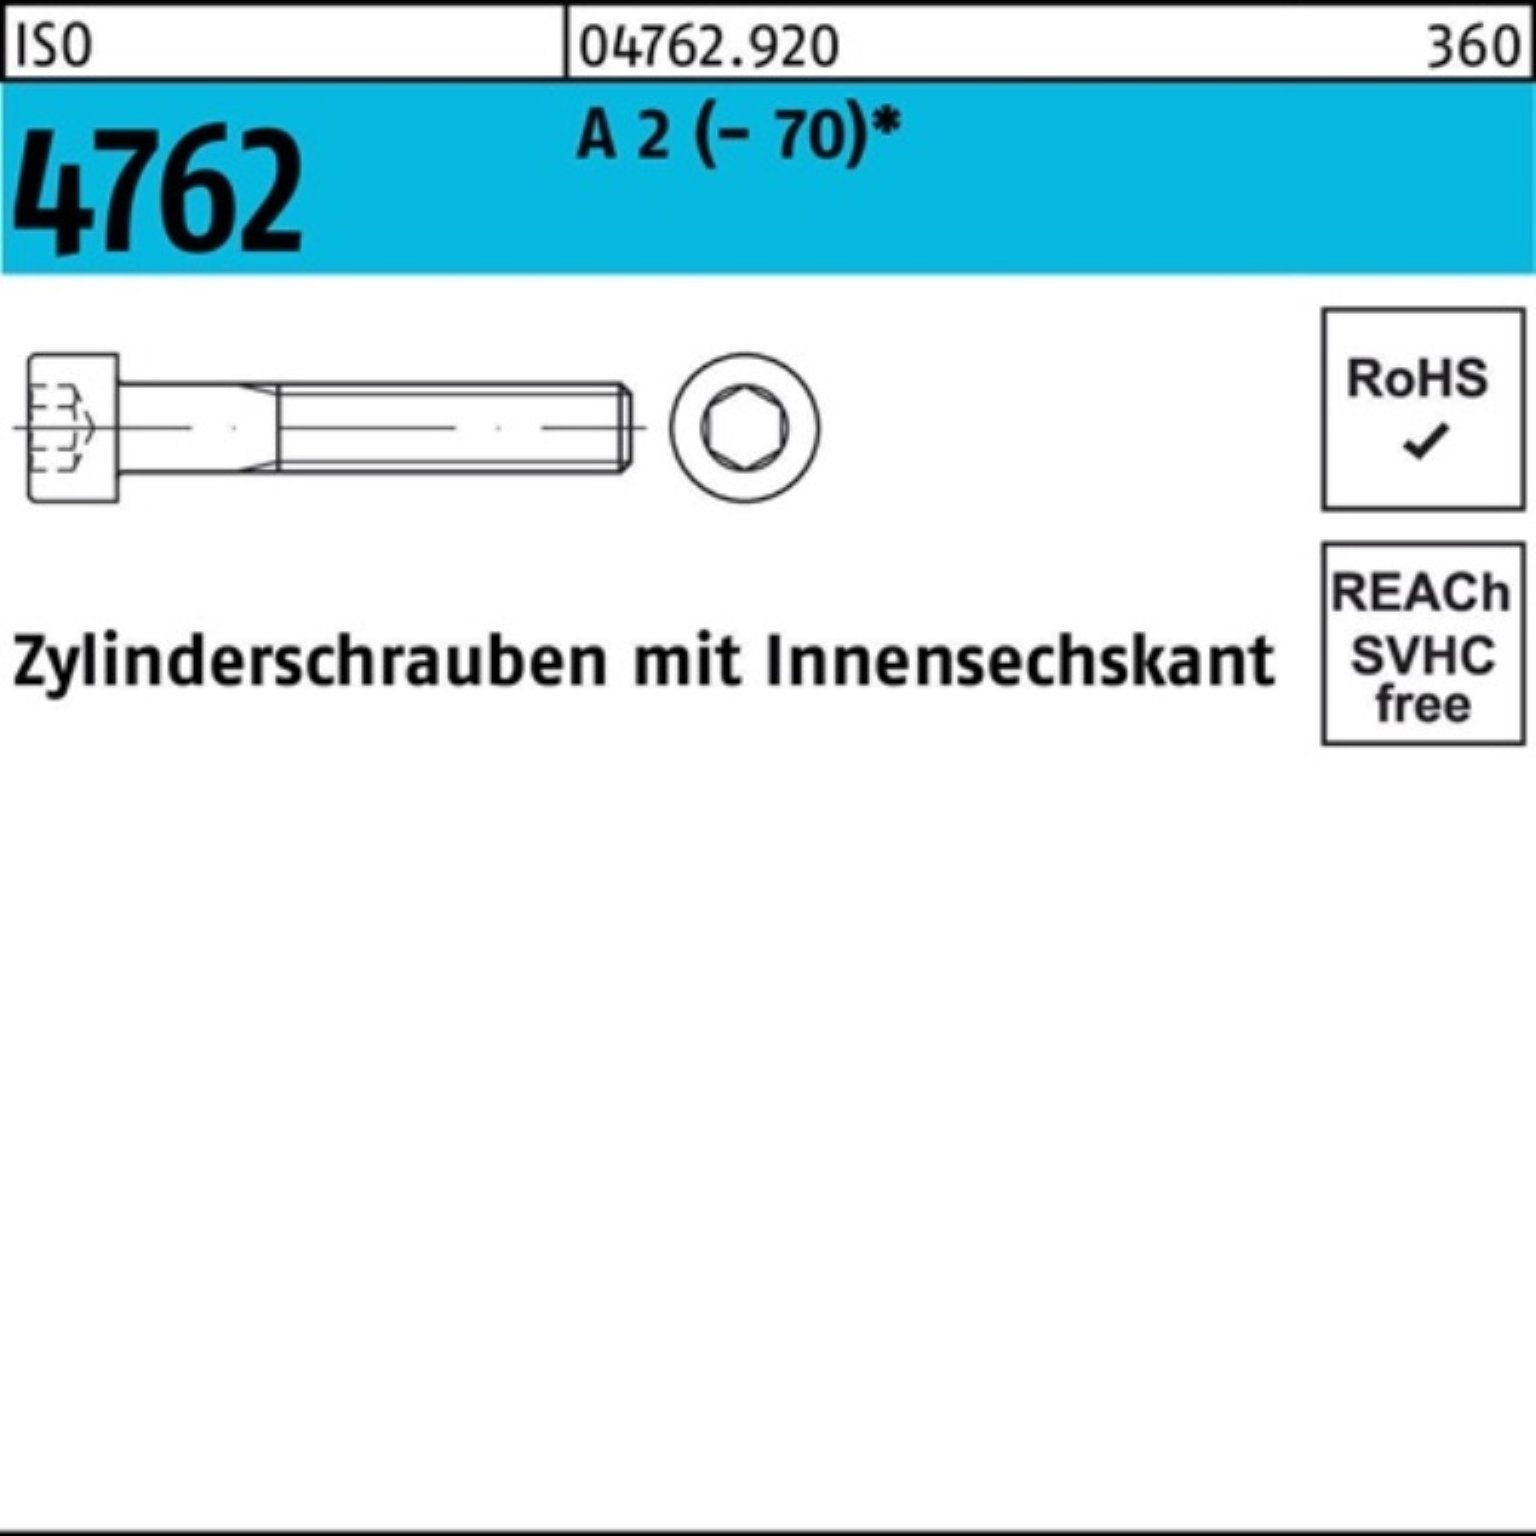 A I Zylinderschraube Reyher 200er Innen-6kt Zylinderschraube M4x ISO 30 Pack 4762 200 Stück 2